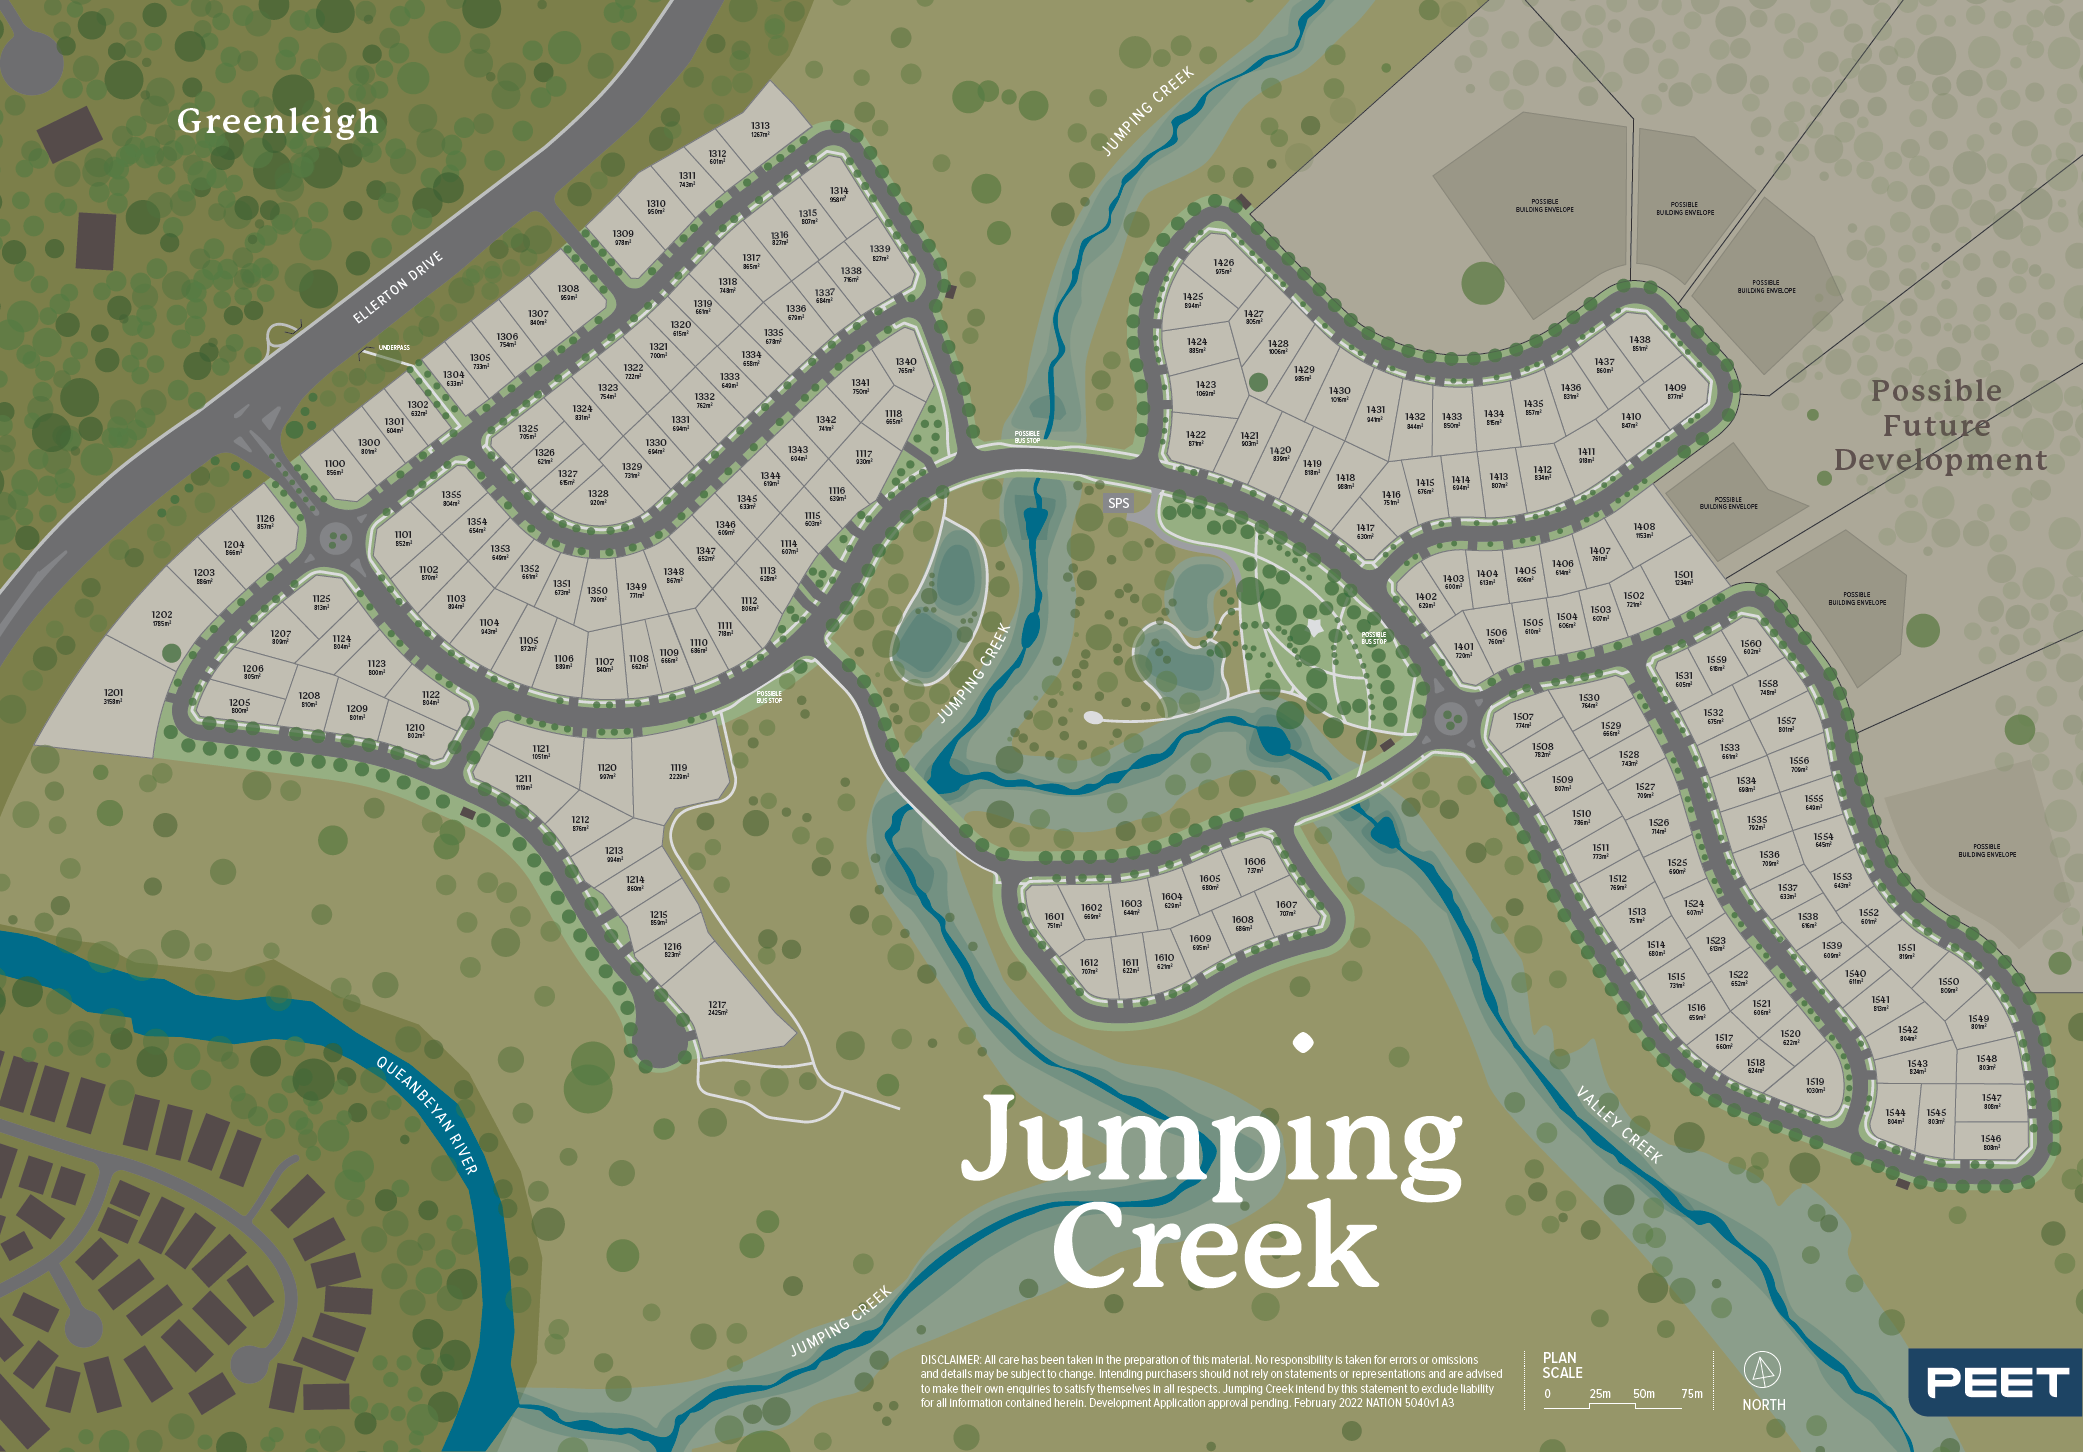 Jumping Creek Masterplan